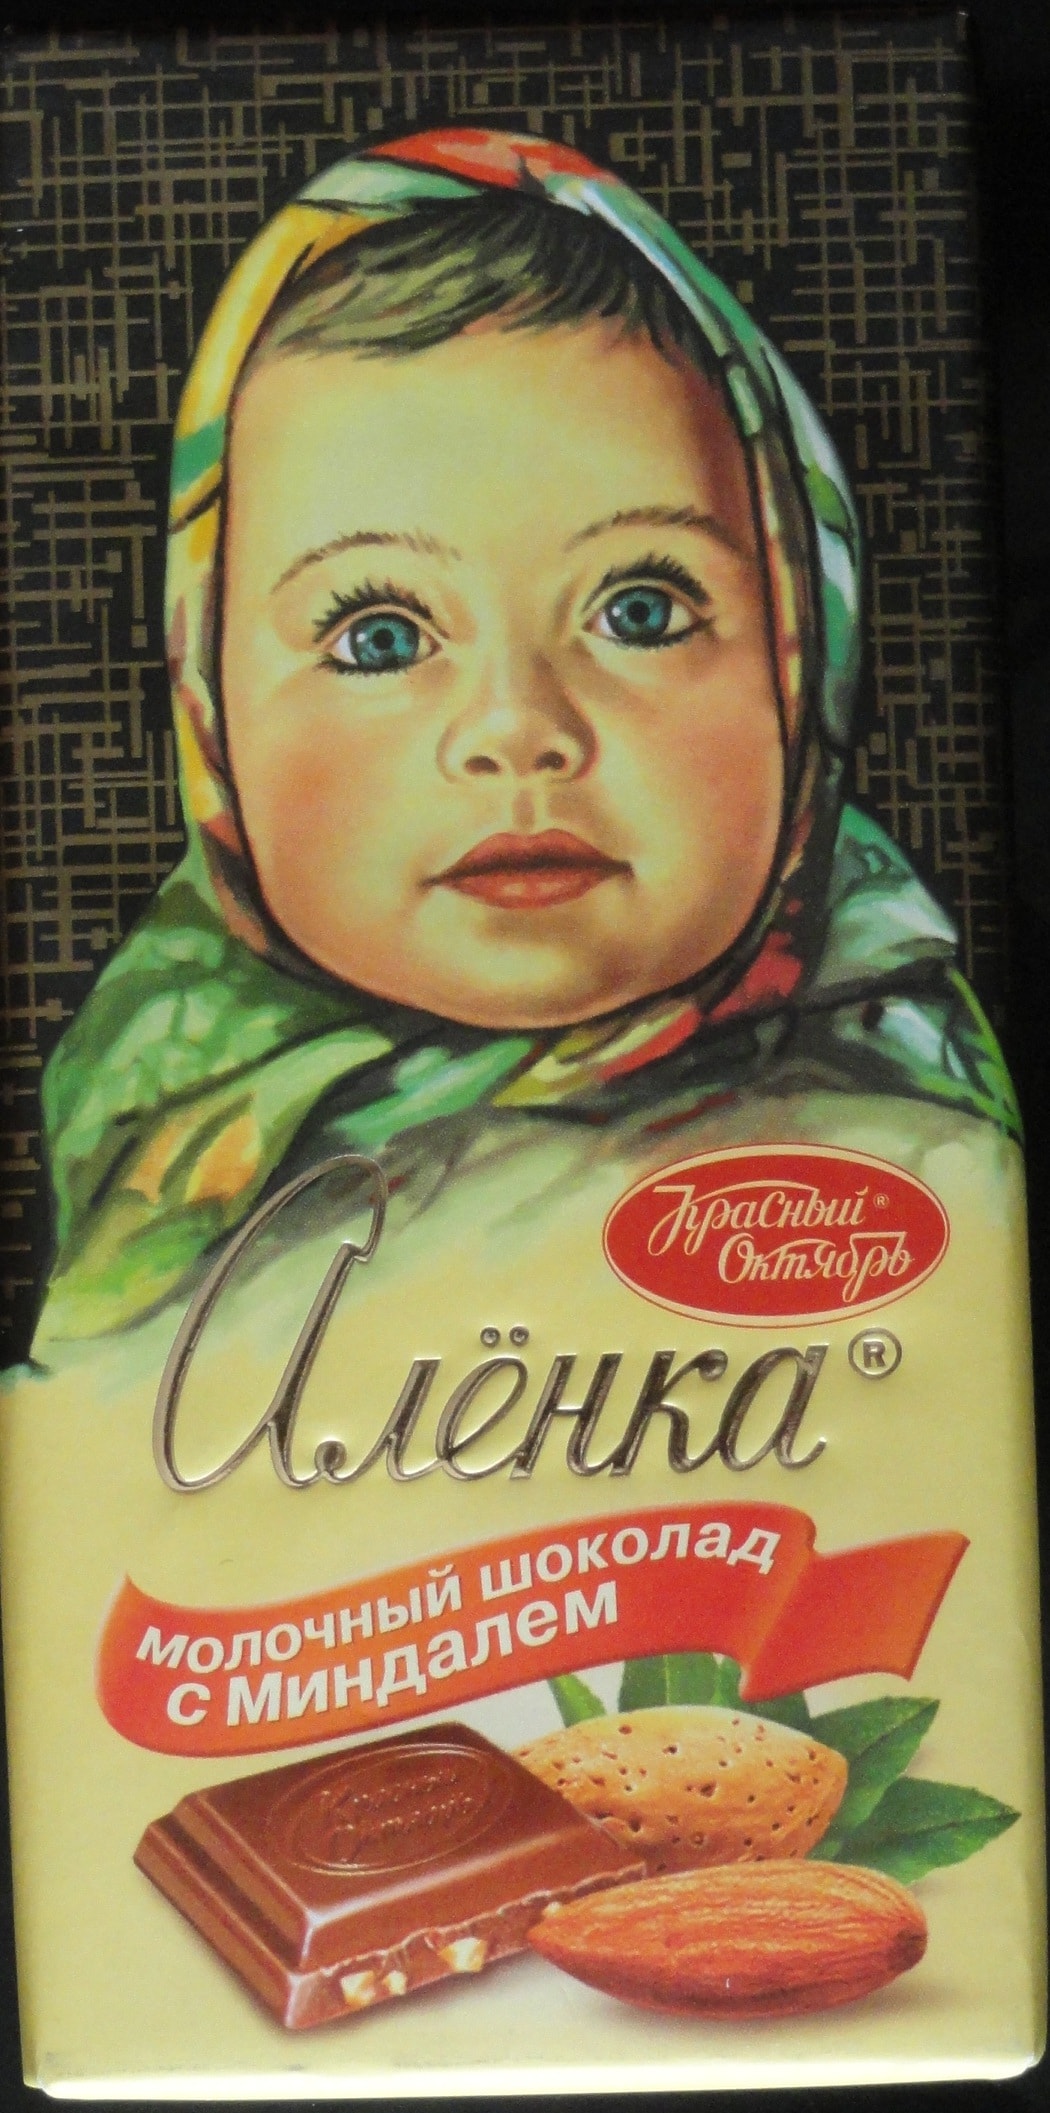 خرید سوغات از روسیه